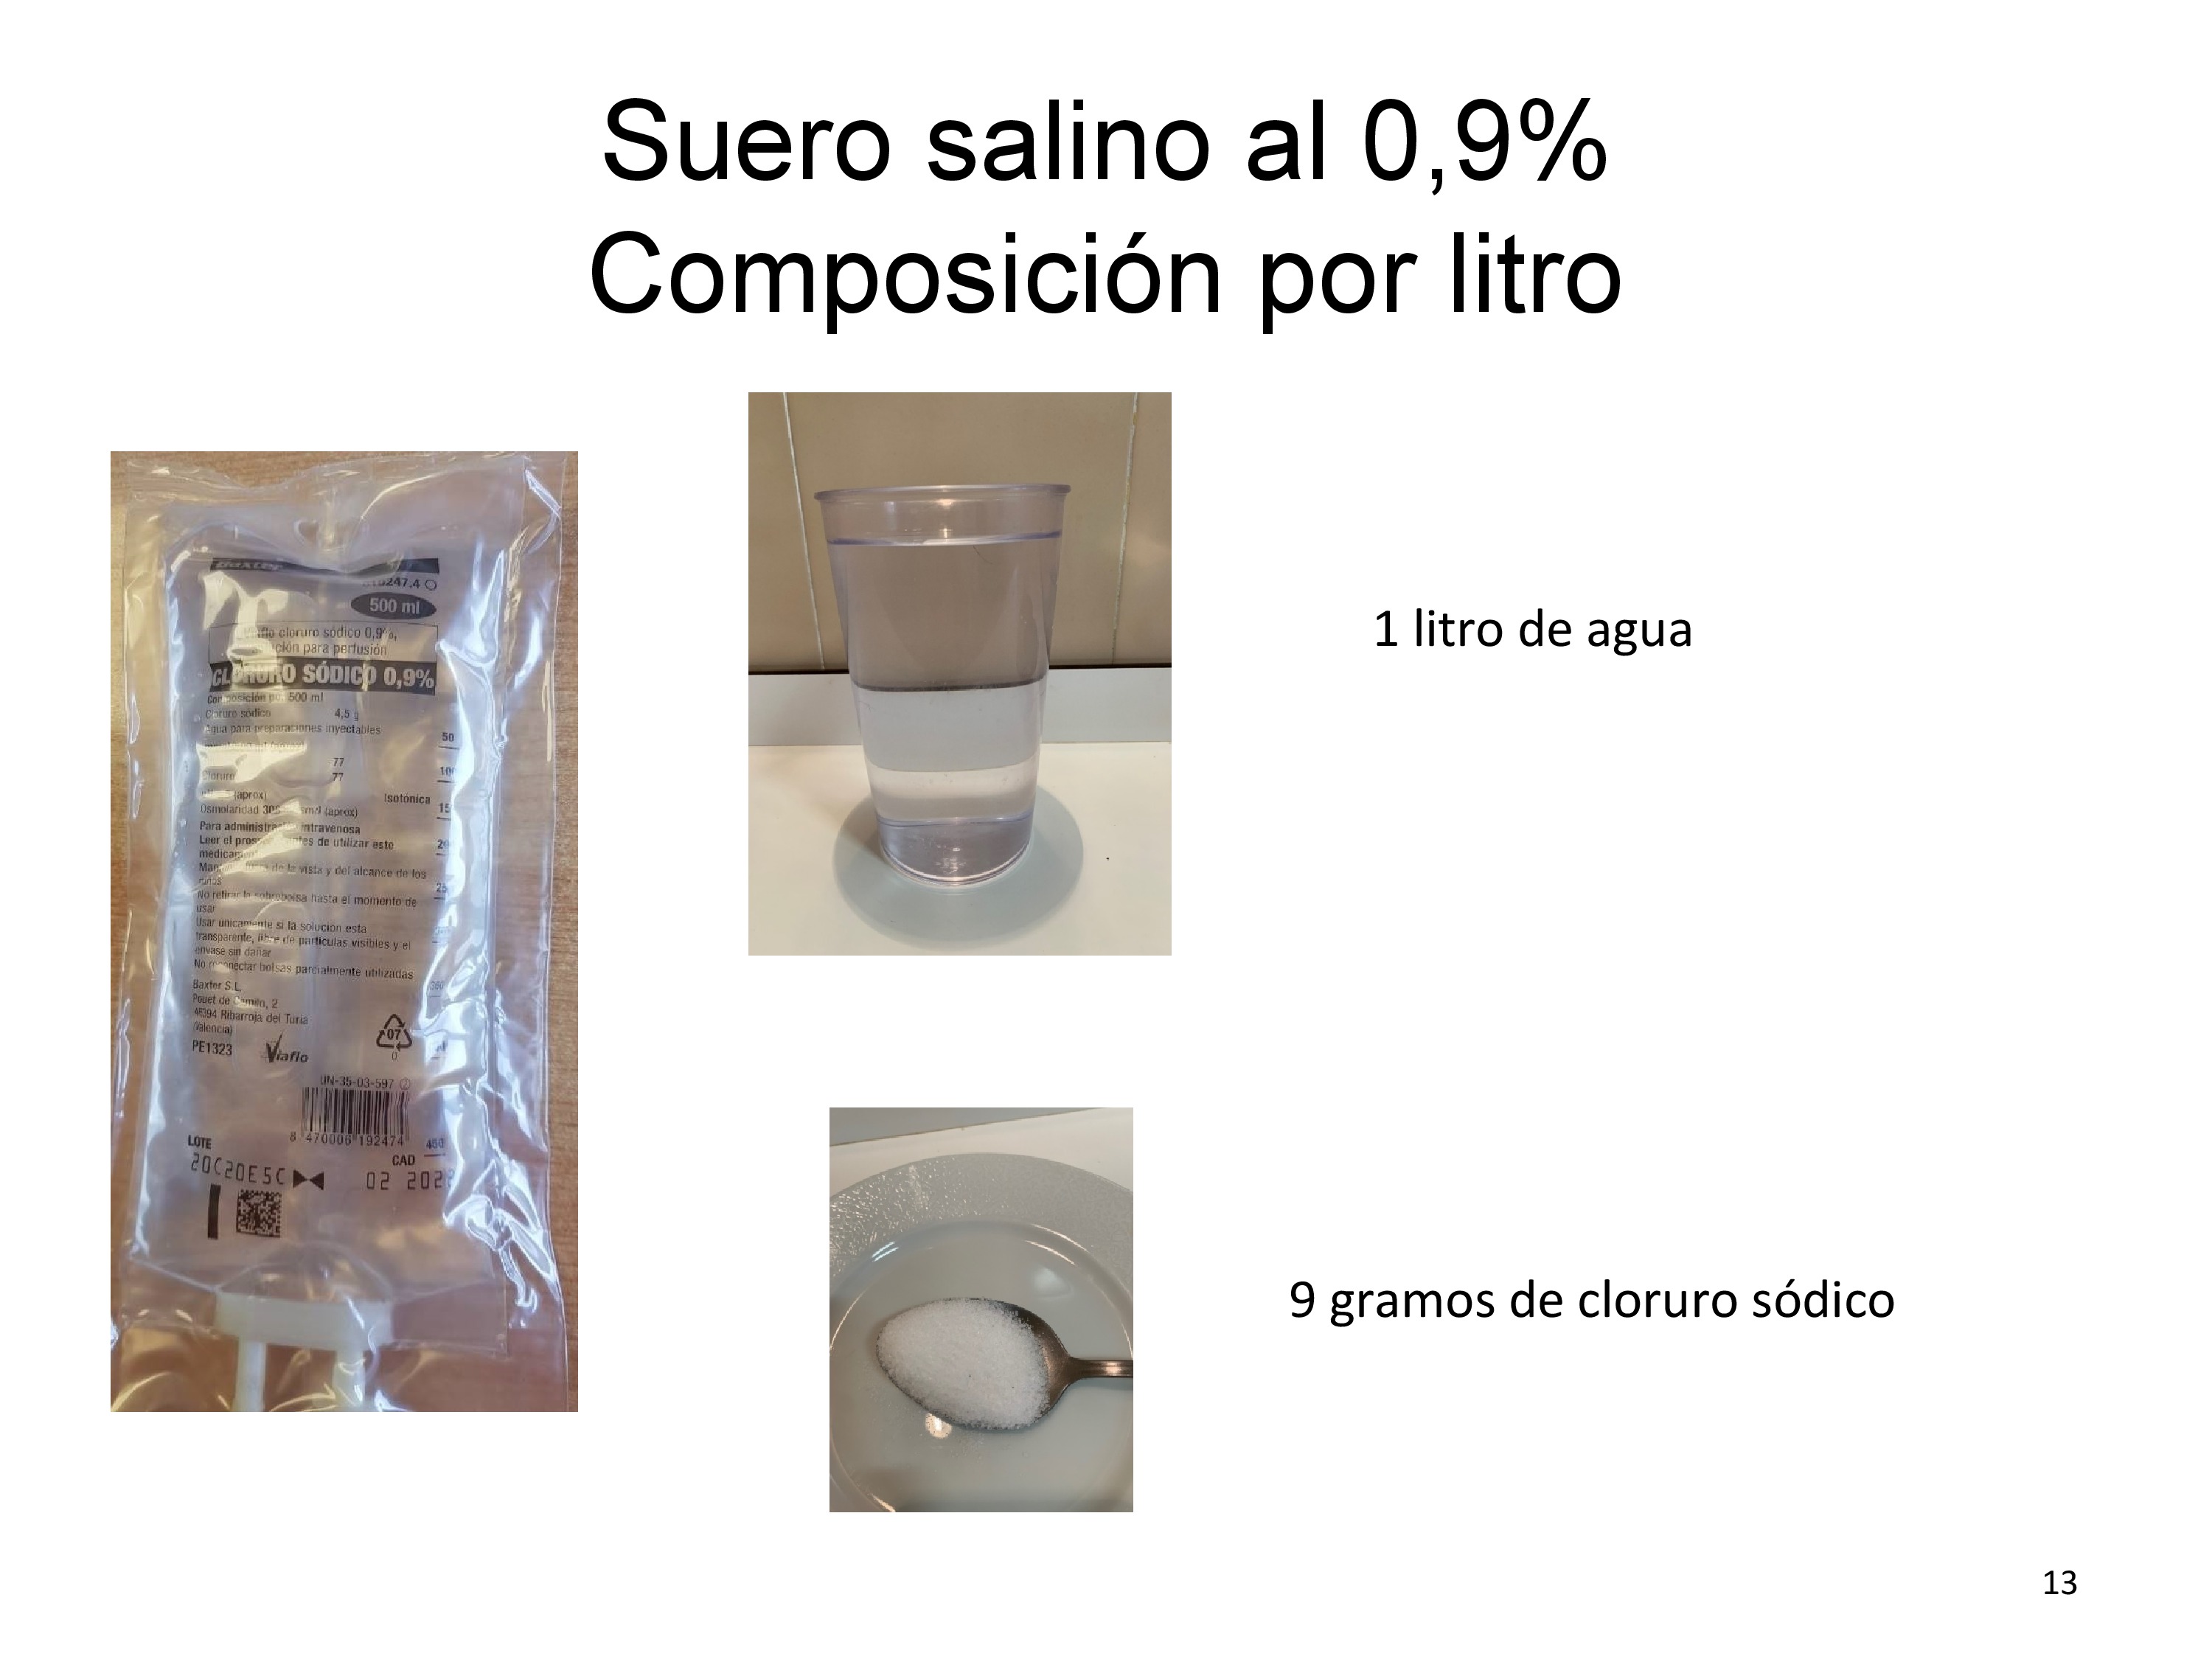 De un modo gráfico se señala la composición del suero salino al 0,9 5% 